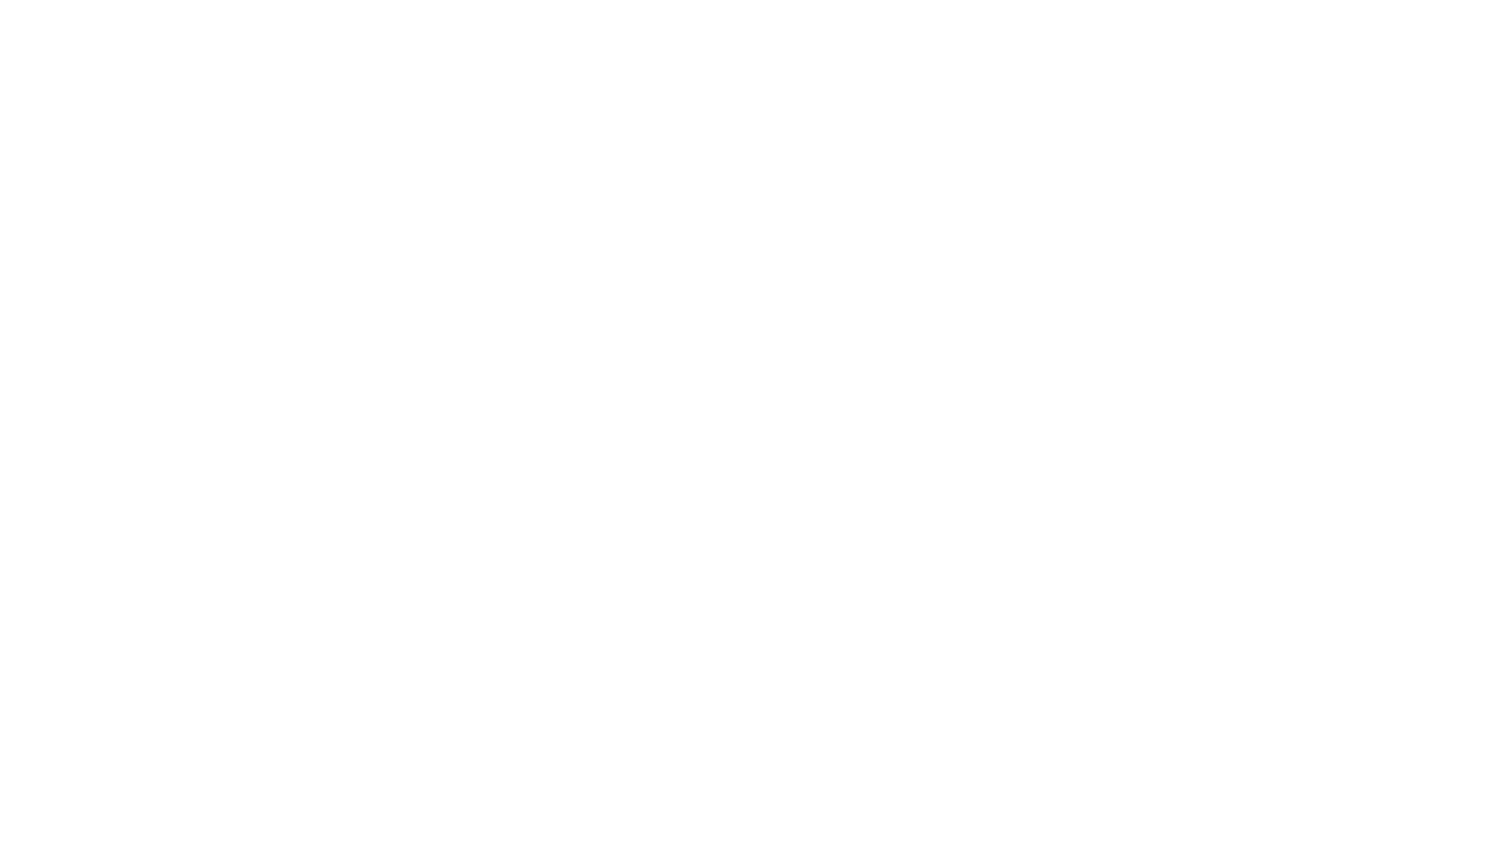 Das yfood-Logo in der produzierenden Industrie.